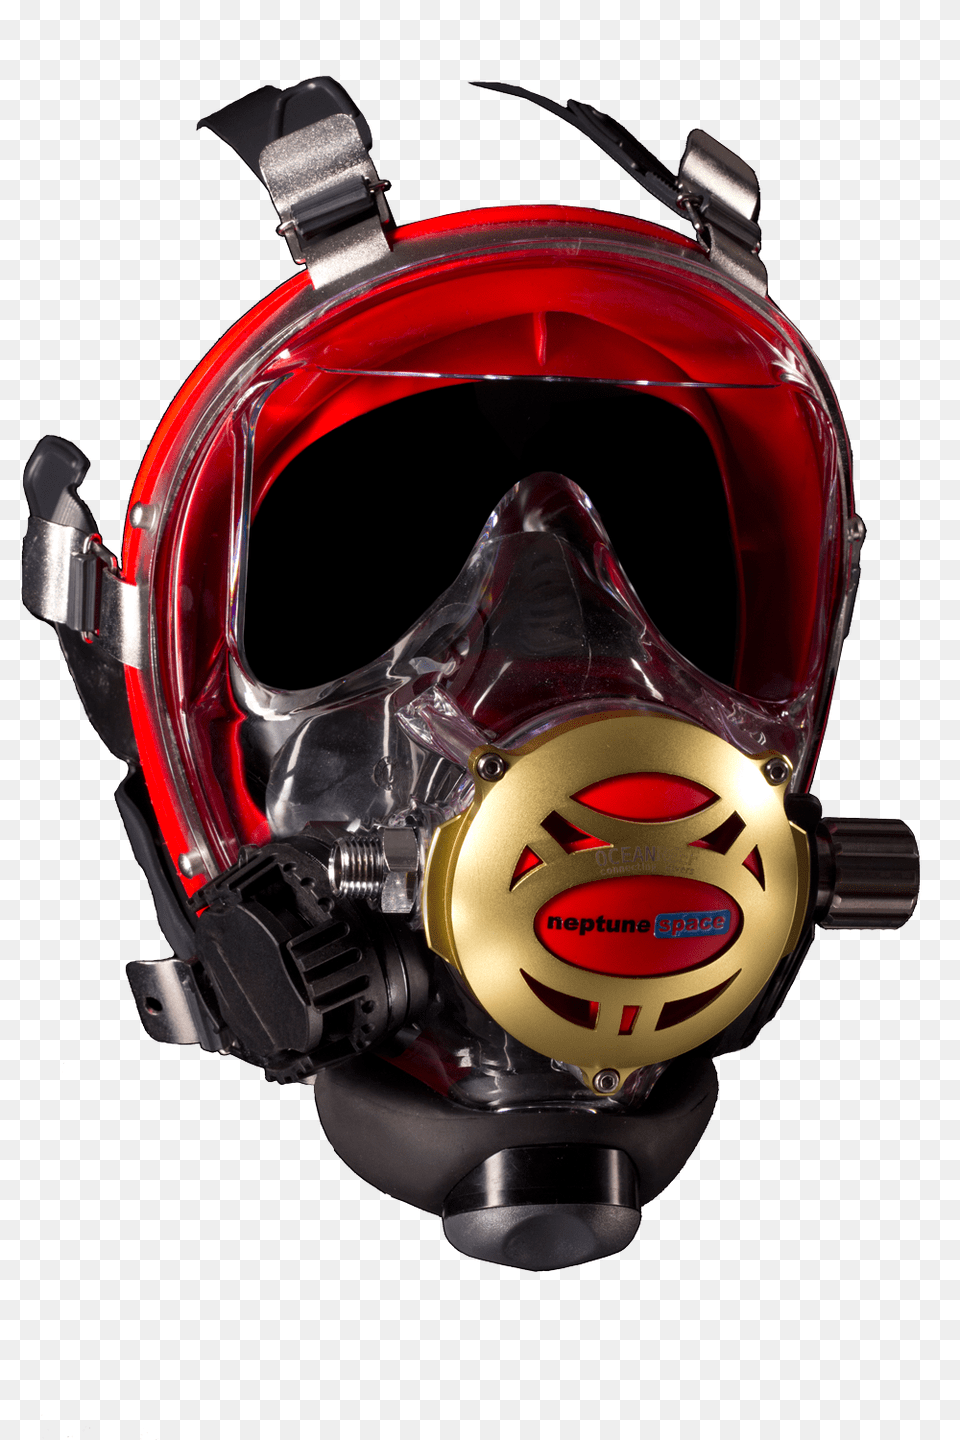 Snorkel, Accessories, Goggles, Helmet Png Image